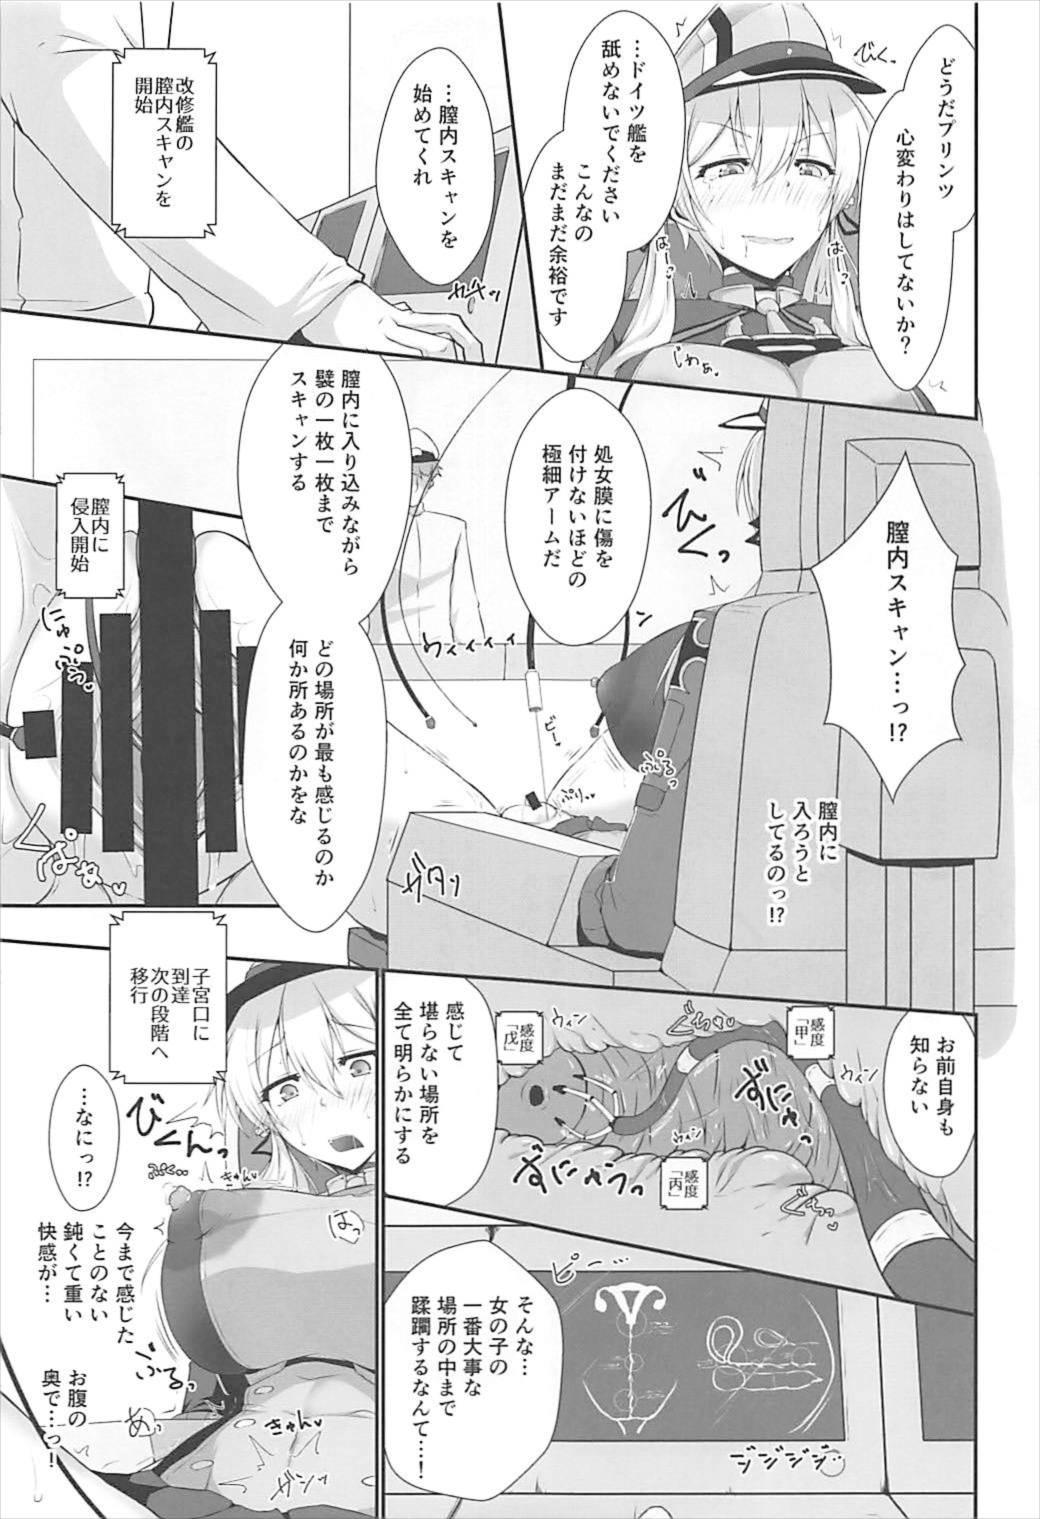 Eating Doitsukan wa Kikaikan ni Kussuru Hazu ga Nain dakara! - Kantai collection Home - Page 9